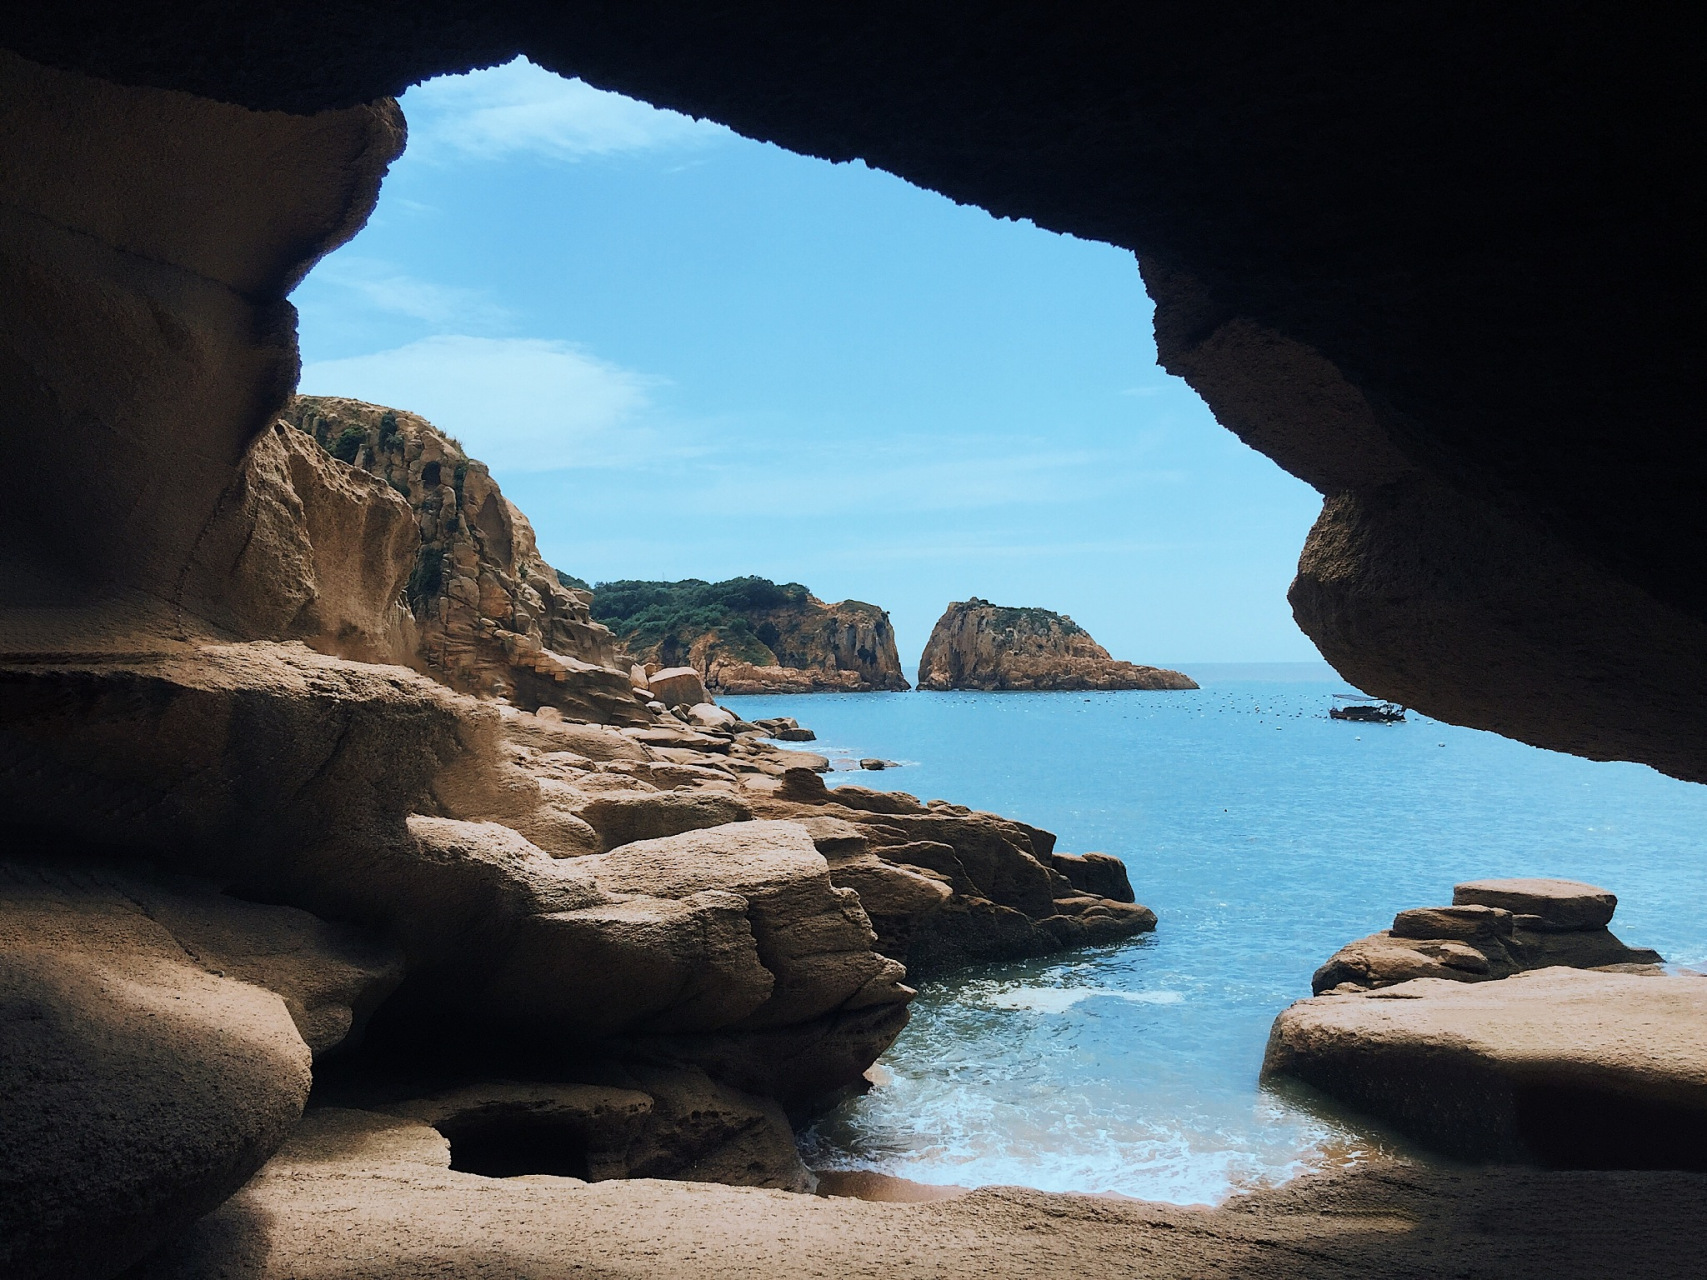 福建霞浦·下尾岛,千年海水侵蚀雕刻的海蚀洞景观,壮美奇幻